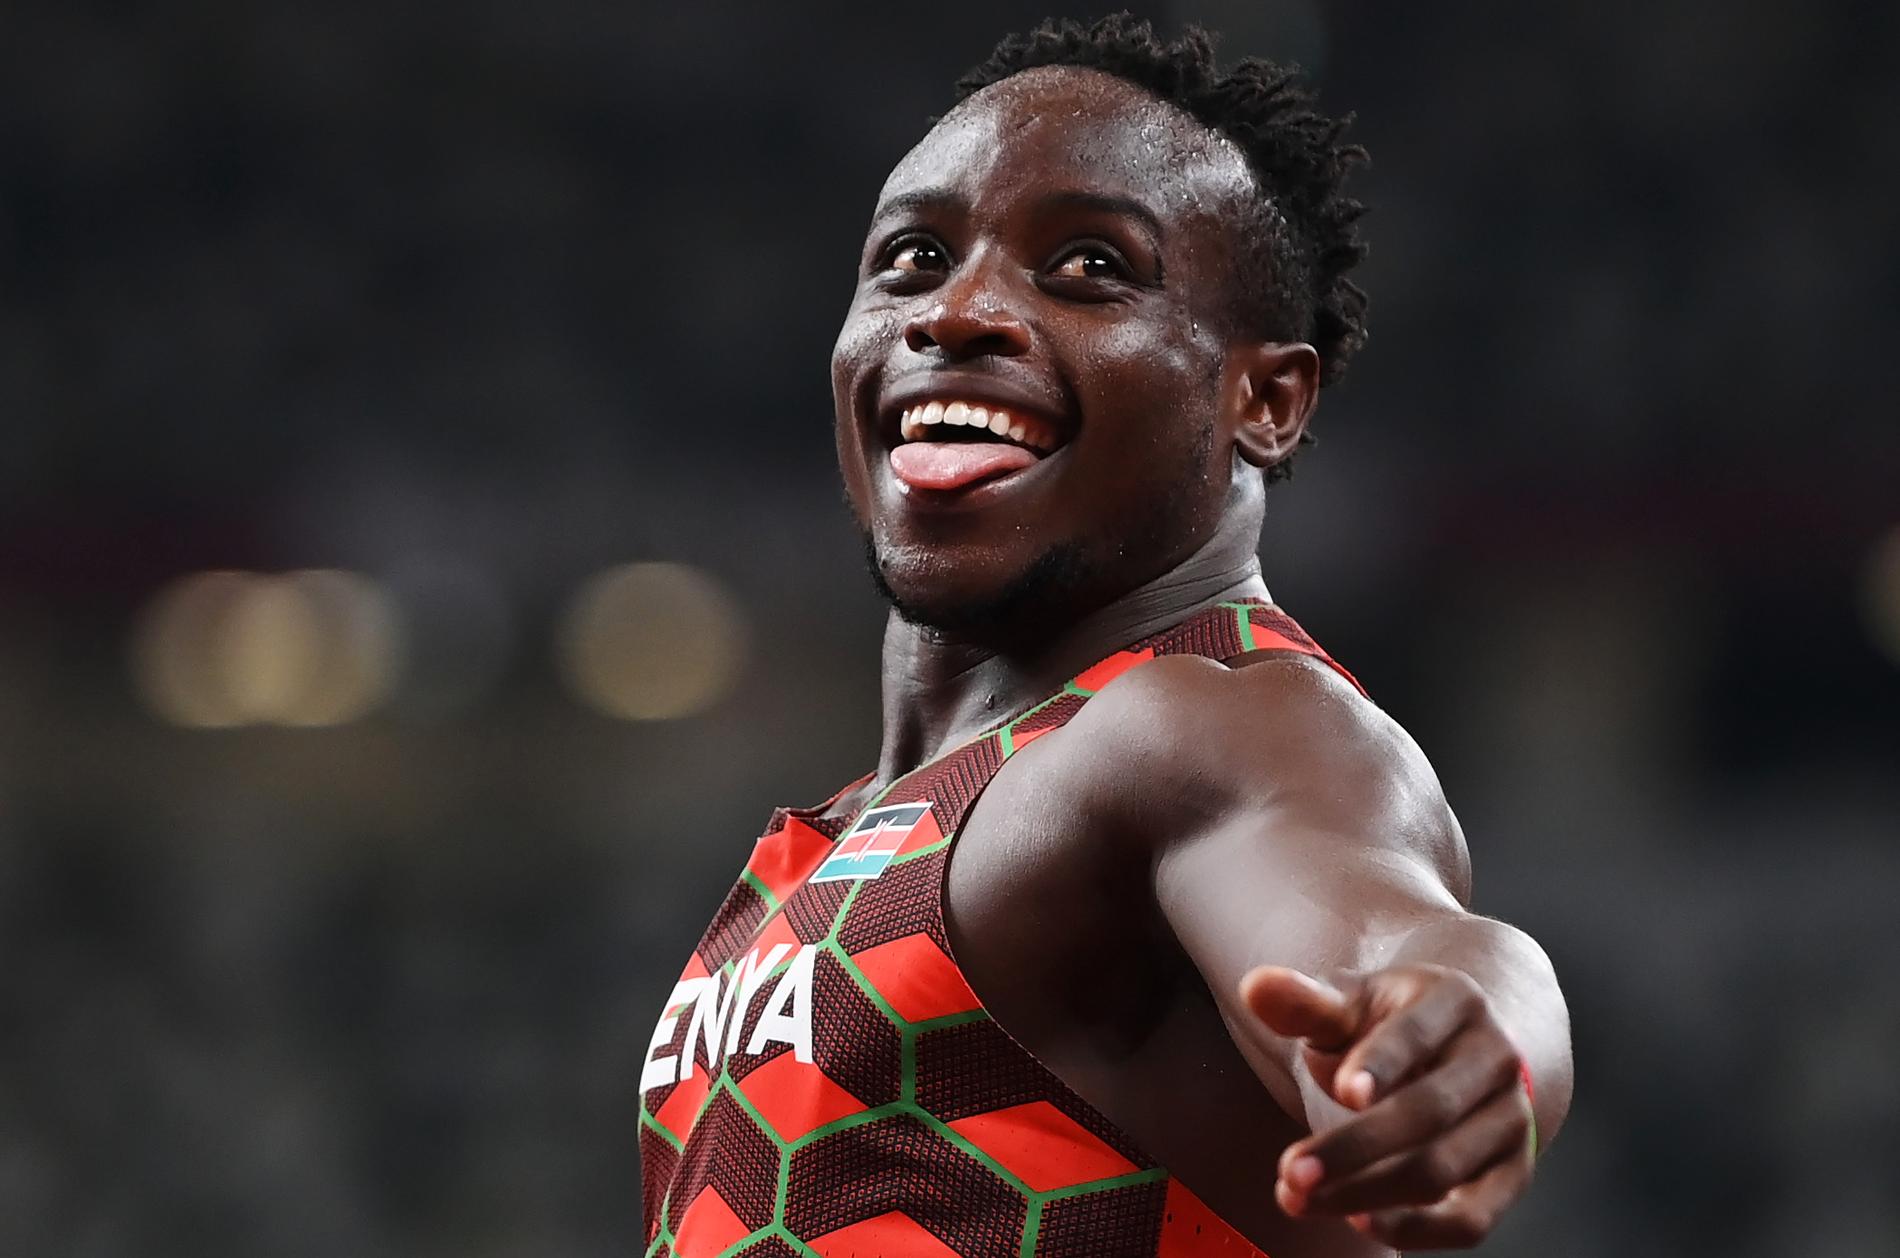 Ferdinand Omurwa krossade de kenyanska rekordet på 100 meter – dubbelt upp.